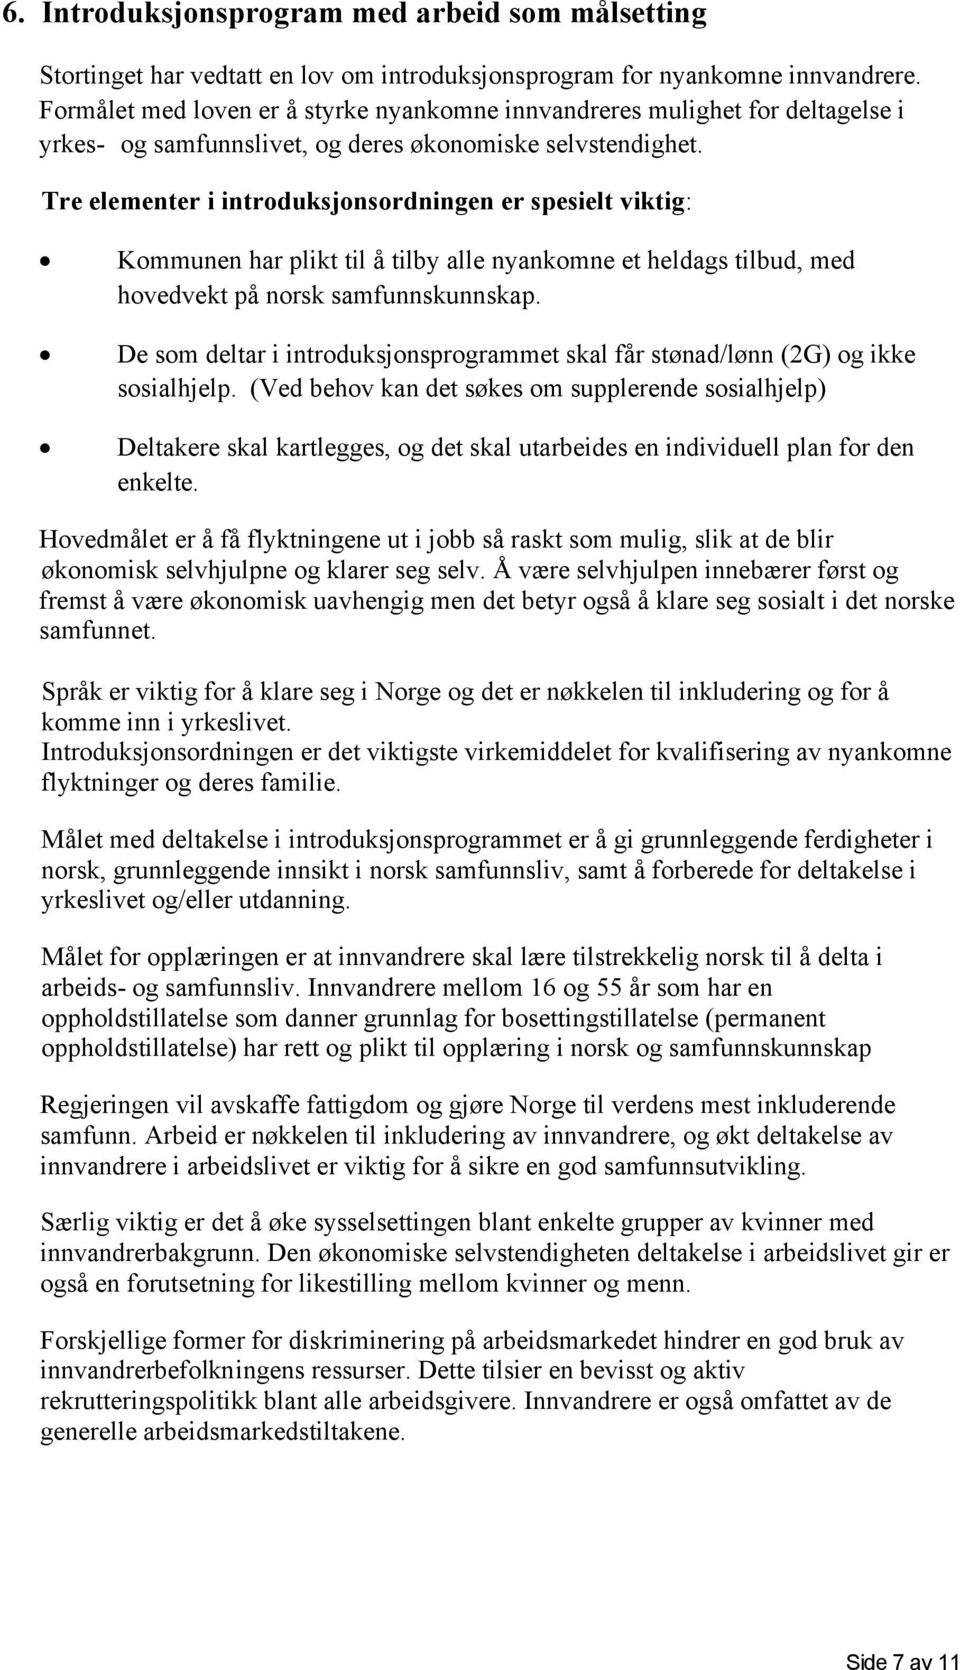 Tre elementer i introduksjonsordningen er spesielt viktig: Kommunen har plikt til å tilby alle nyankomne et heldags tilbud, med hovedvekt på norsk samfunnskunnskap.